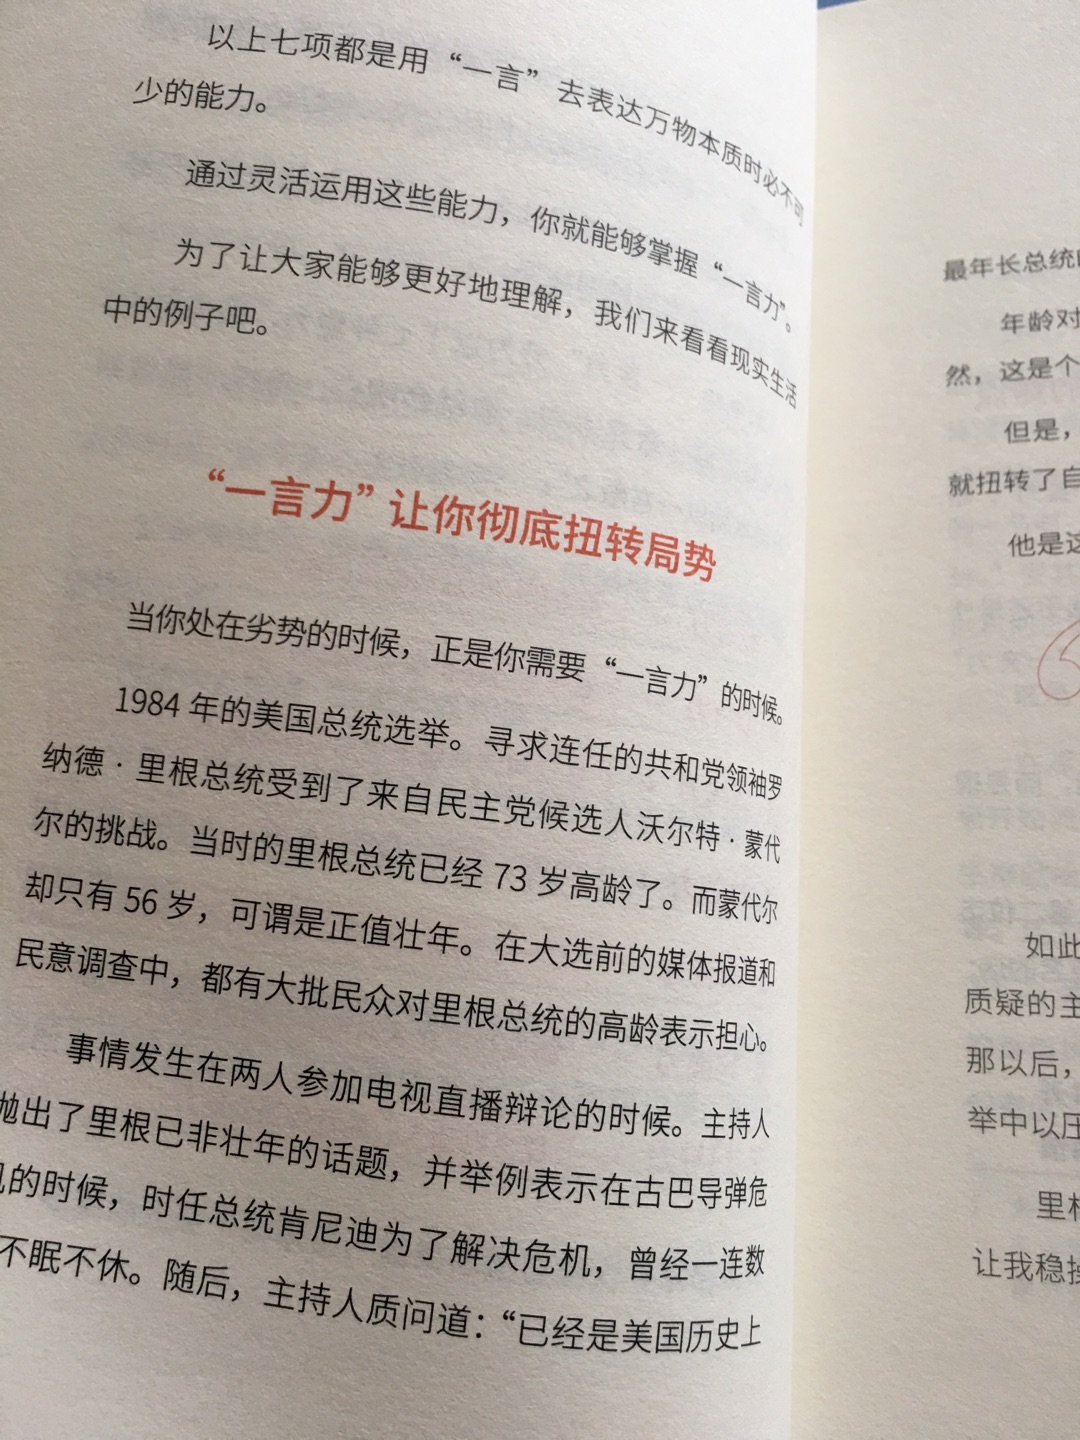 虽然国家不同，但是每一个民族都相信语言的力量，这个是日本人写的。